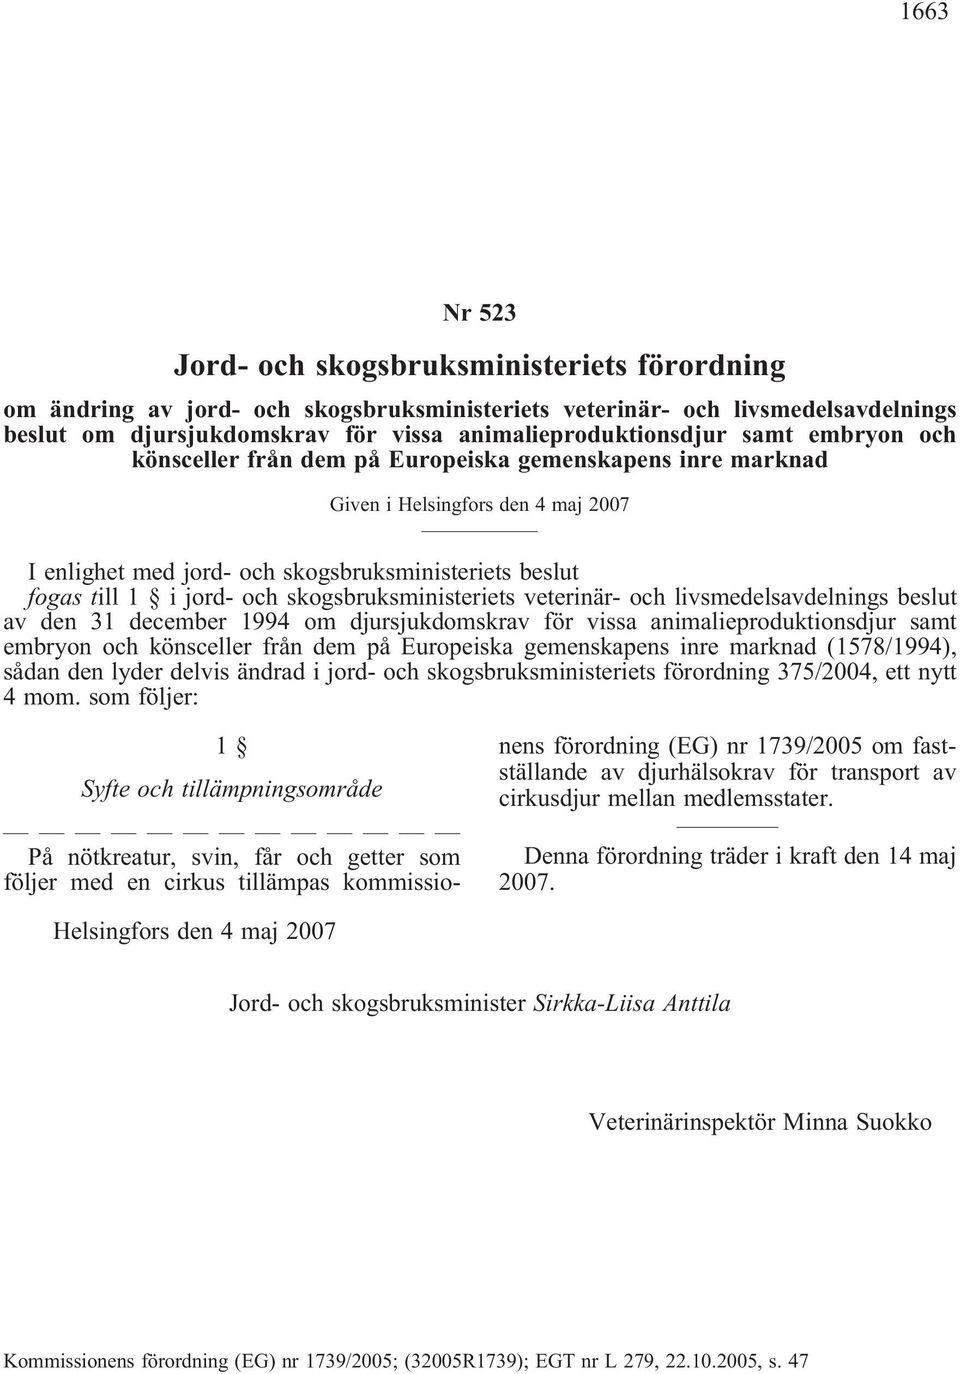 skogsbruksministeriets veterinär- och livsmedelsavdelnings beslut av den 31 december 1994 om djursjukdomskrav för vissa animalieproduktionsdjur samt embryon och könsceller från dem på Europeiska